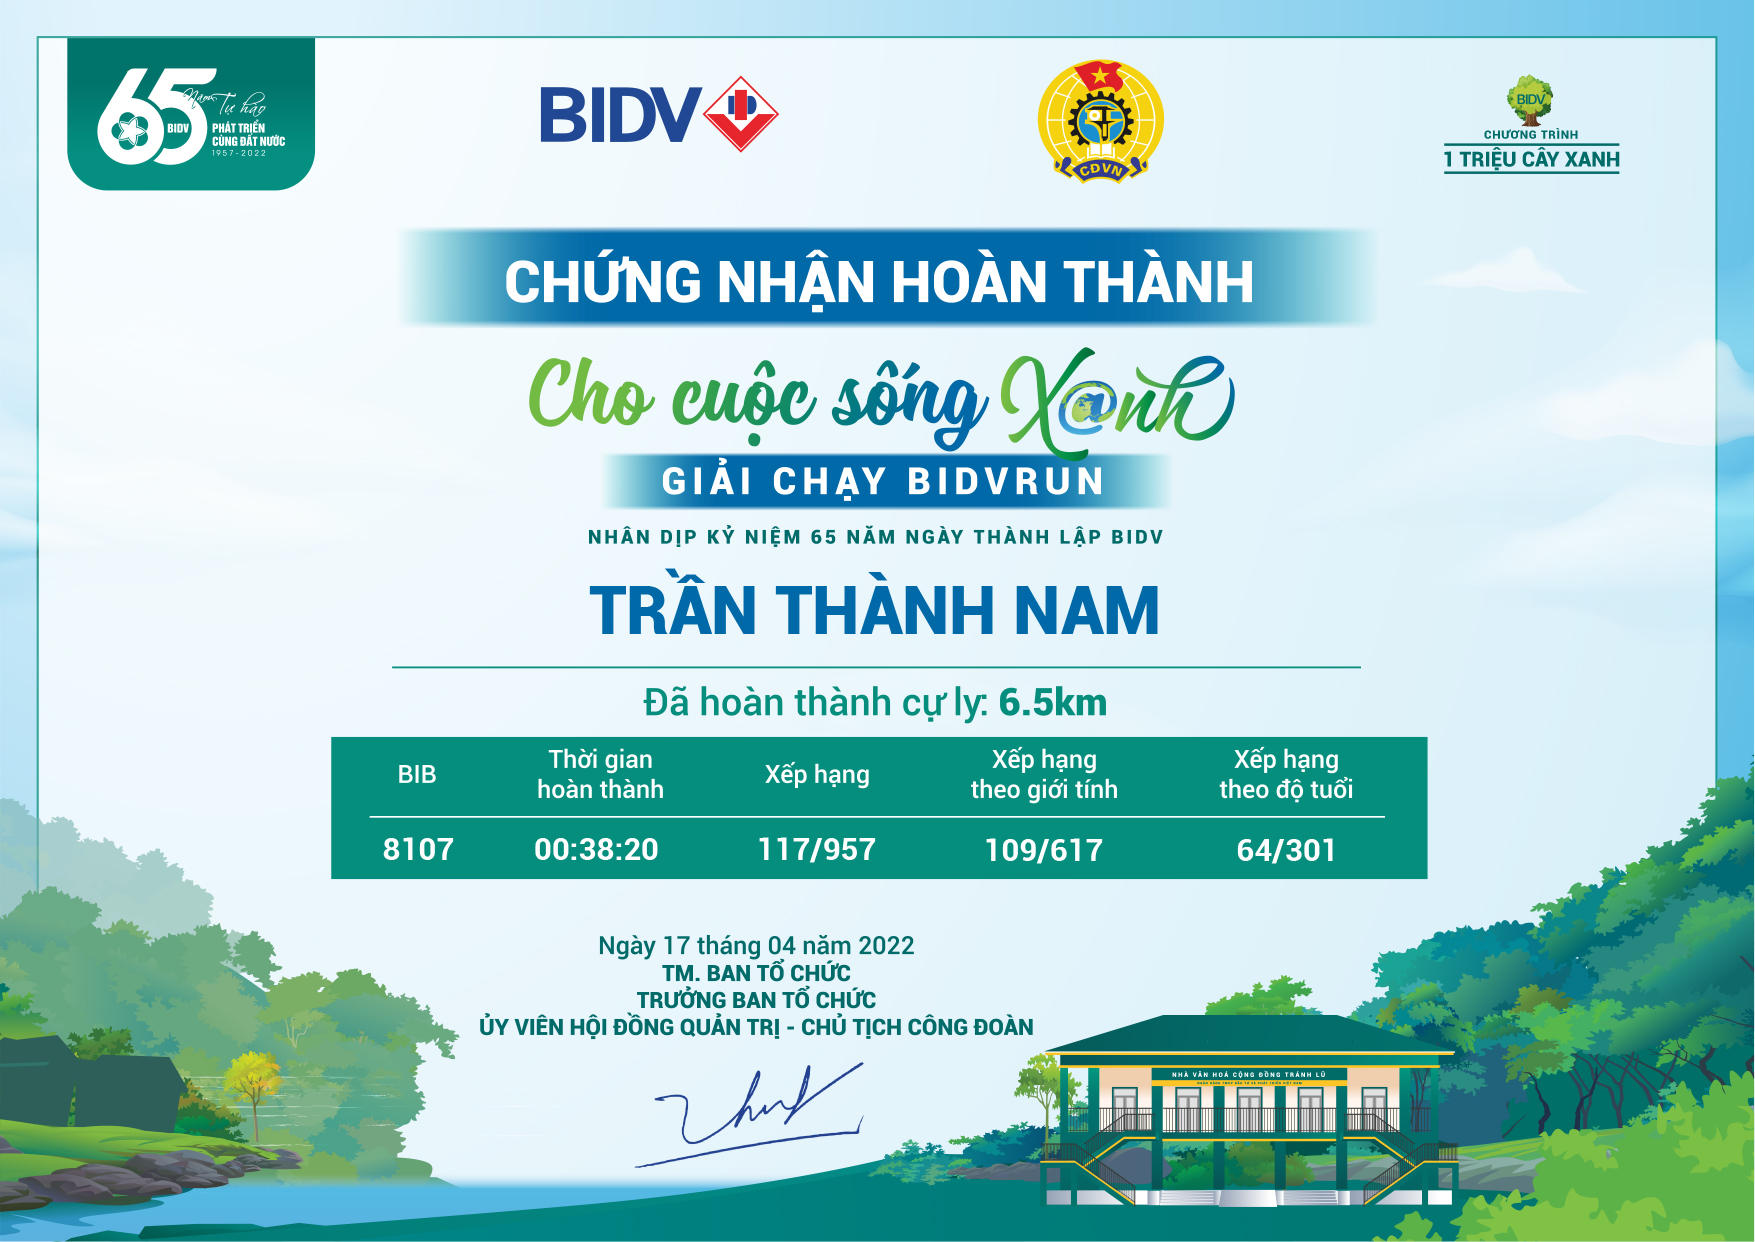 8107 - Trần Thành Nam